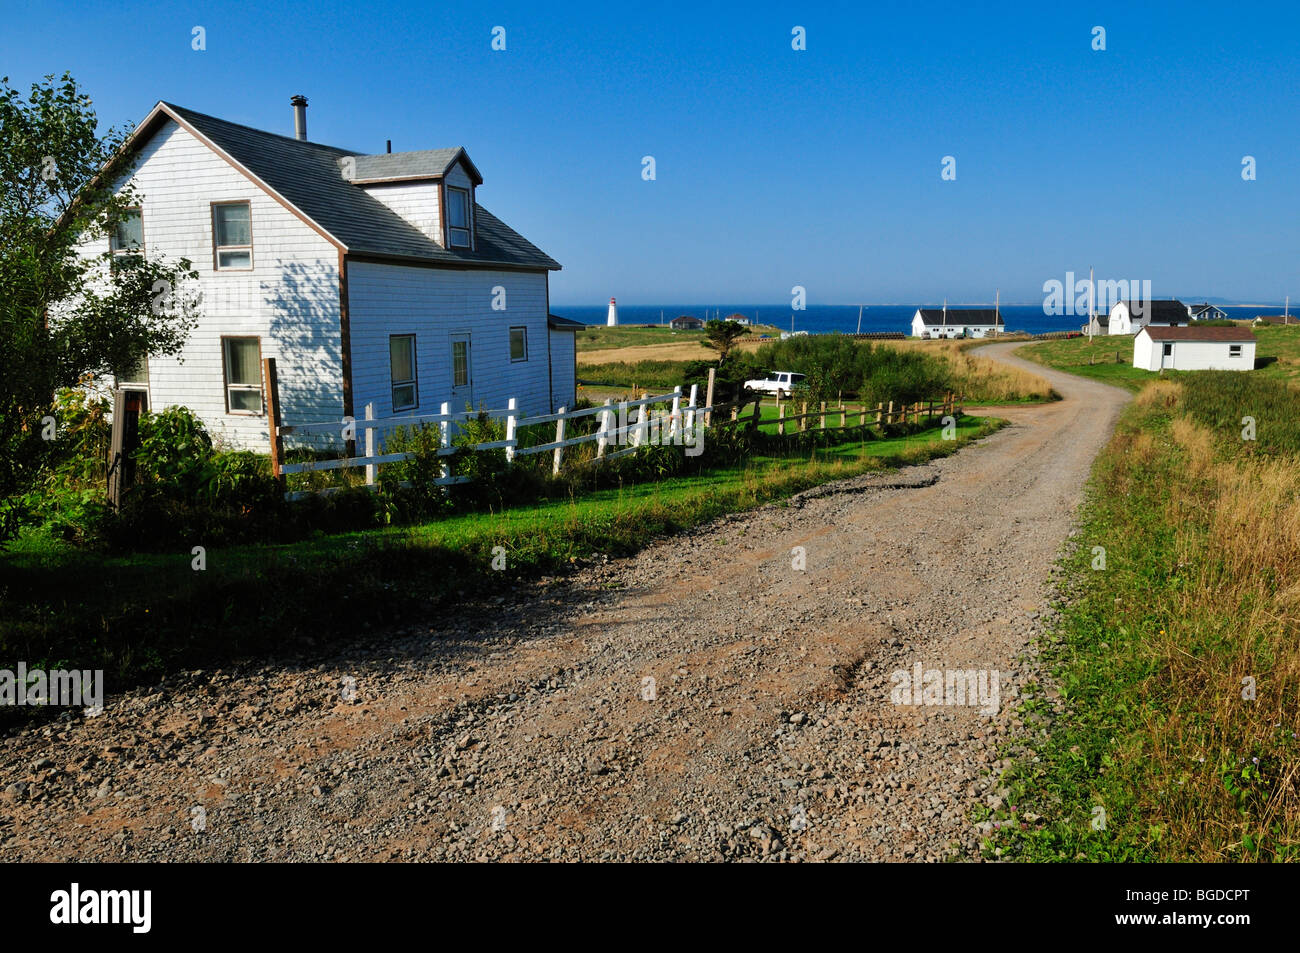 Maisons au bord de la route principale de l'Ile d'entrée, l'île d'Entrée, Îles de la Madeleine, Îles de la Madeleine, Québec, Canada Maritime, Nort Banque D'Images